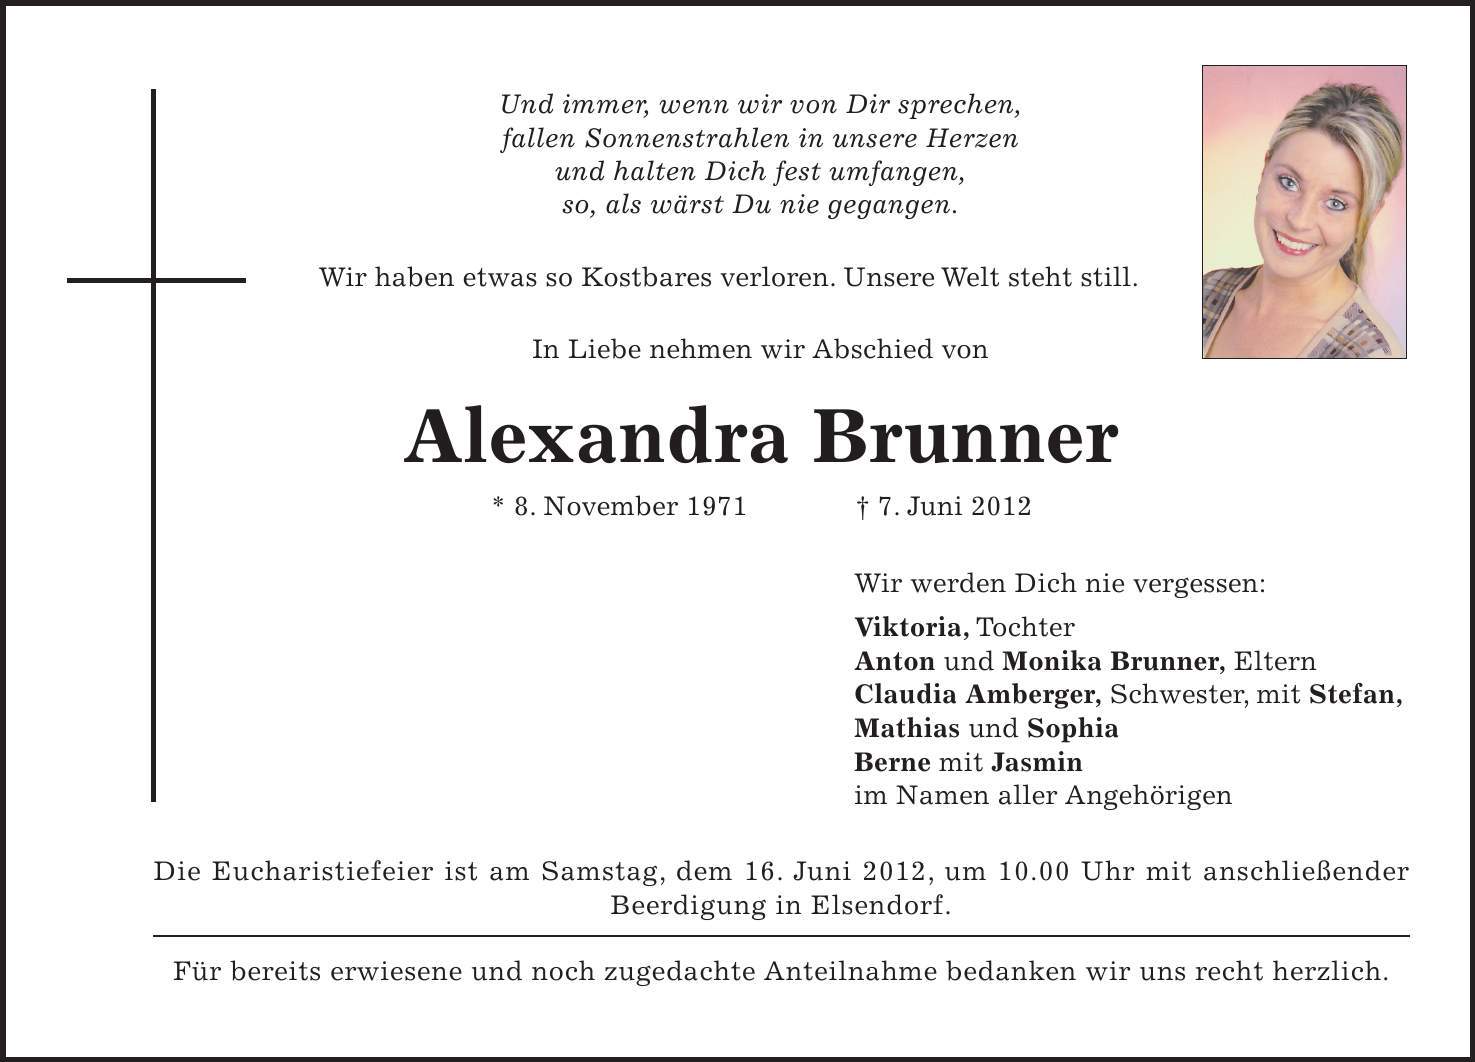 Die Eucharistiefeier ist am Samstag, dem 16. Juni 2012, um 10.00 Uhr mit anschließender Beerdigung in Elsendorf. Für bereits erwiesene und noch zugedachte Anteilnahme bedanken wir uns recht herzlich. Und immer, wenn wir von Dir sprechen, fallen Sonnenstrahlen in unsere Herzen und halten Dich fest umfangen, so, als wärst Du nie gegangen. Wir haben etwas so Kostbares verloren. Unsere Welt steht still. In Liebe nehmen wir Abschied von Alexandra Brunner * 8. November 1971 - 7. Juni 2012 Wir werden Dich nie vergessen: Viktoria, Tochter Anton und Monika Brunner, Eltern Claudia Amberger, Schwester, mit Stefan, Mathias und Sophia Berne mit Jasmin im Namen aller Angehörigen 